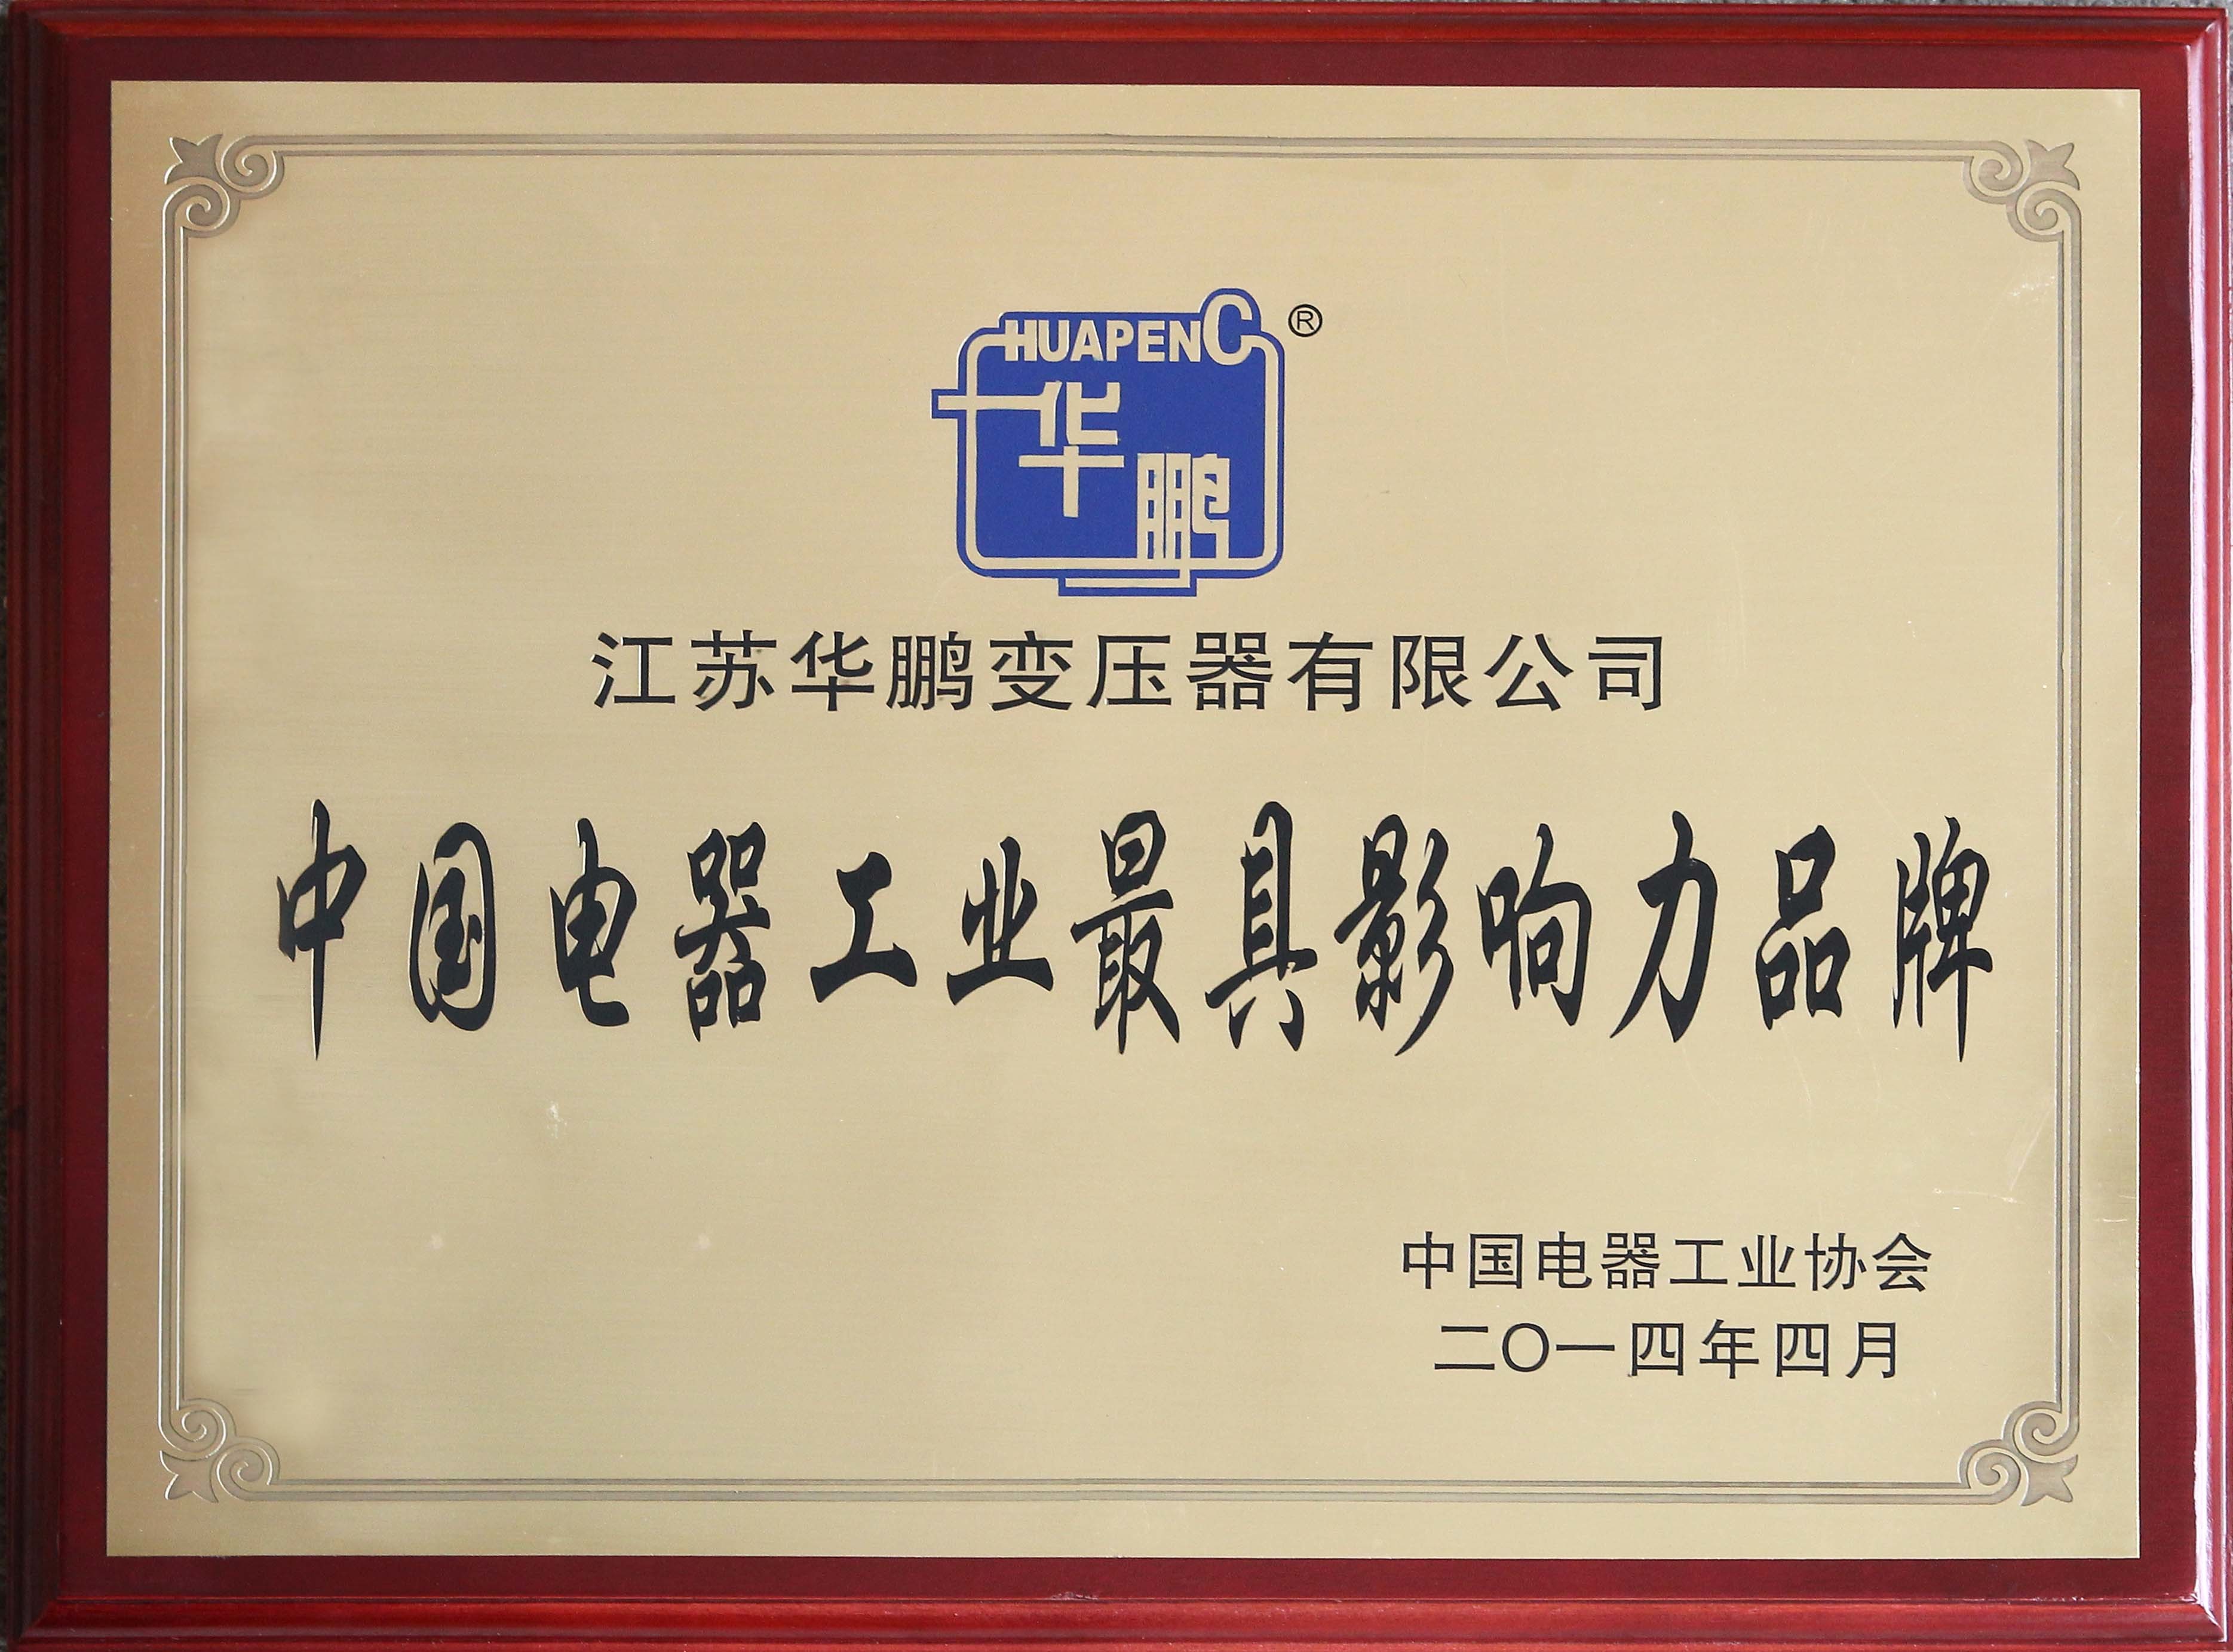 2014年中国电器工业最具影响力品牌